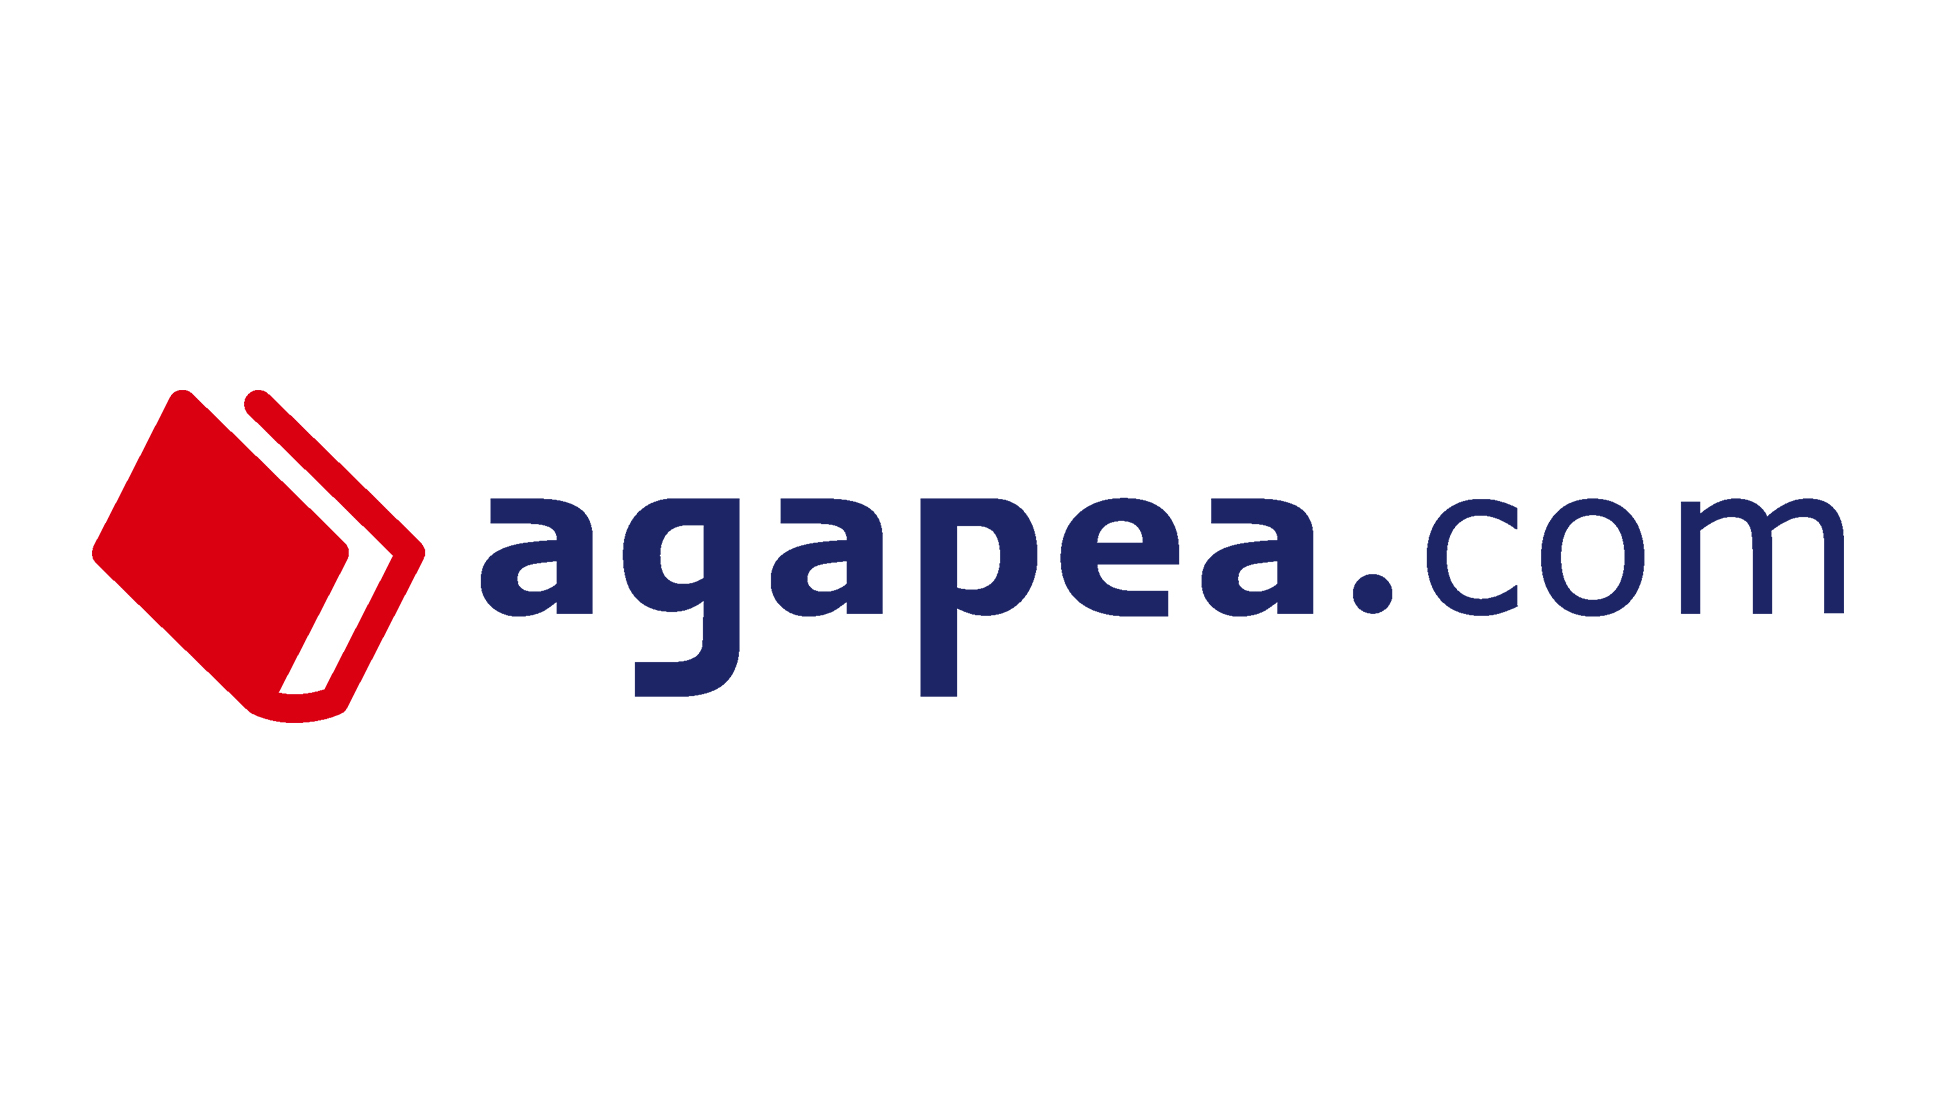 agapea.com